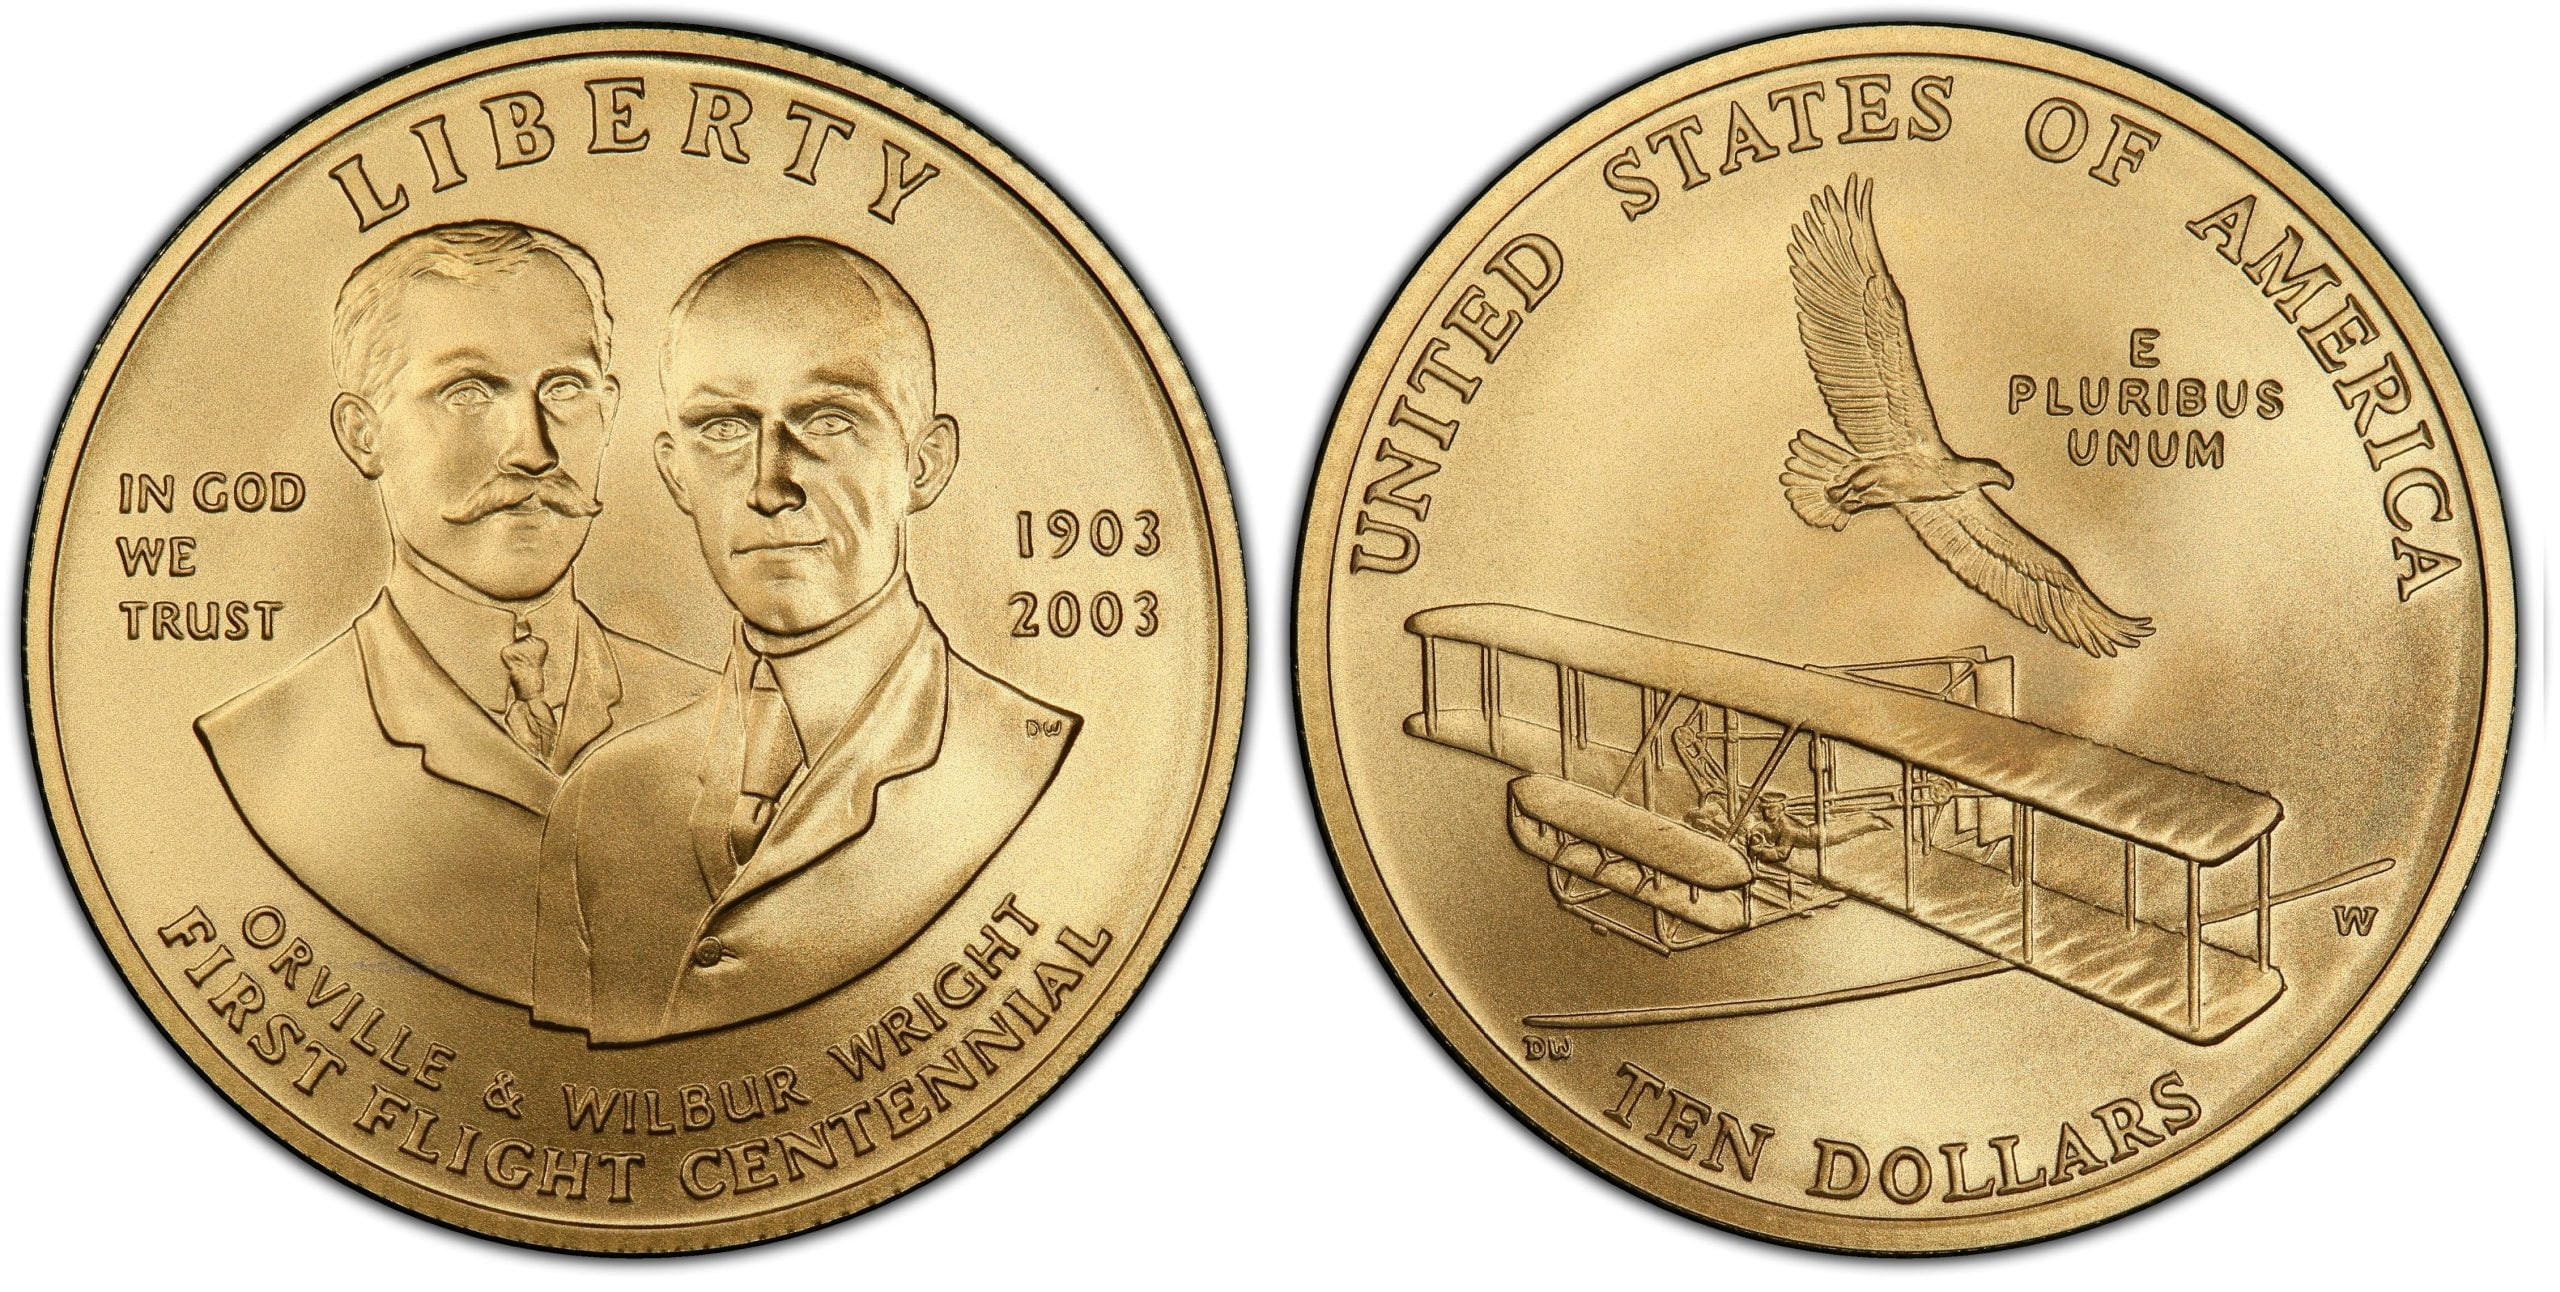 10 Gold Dollars (Frist Flight Centennial)